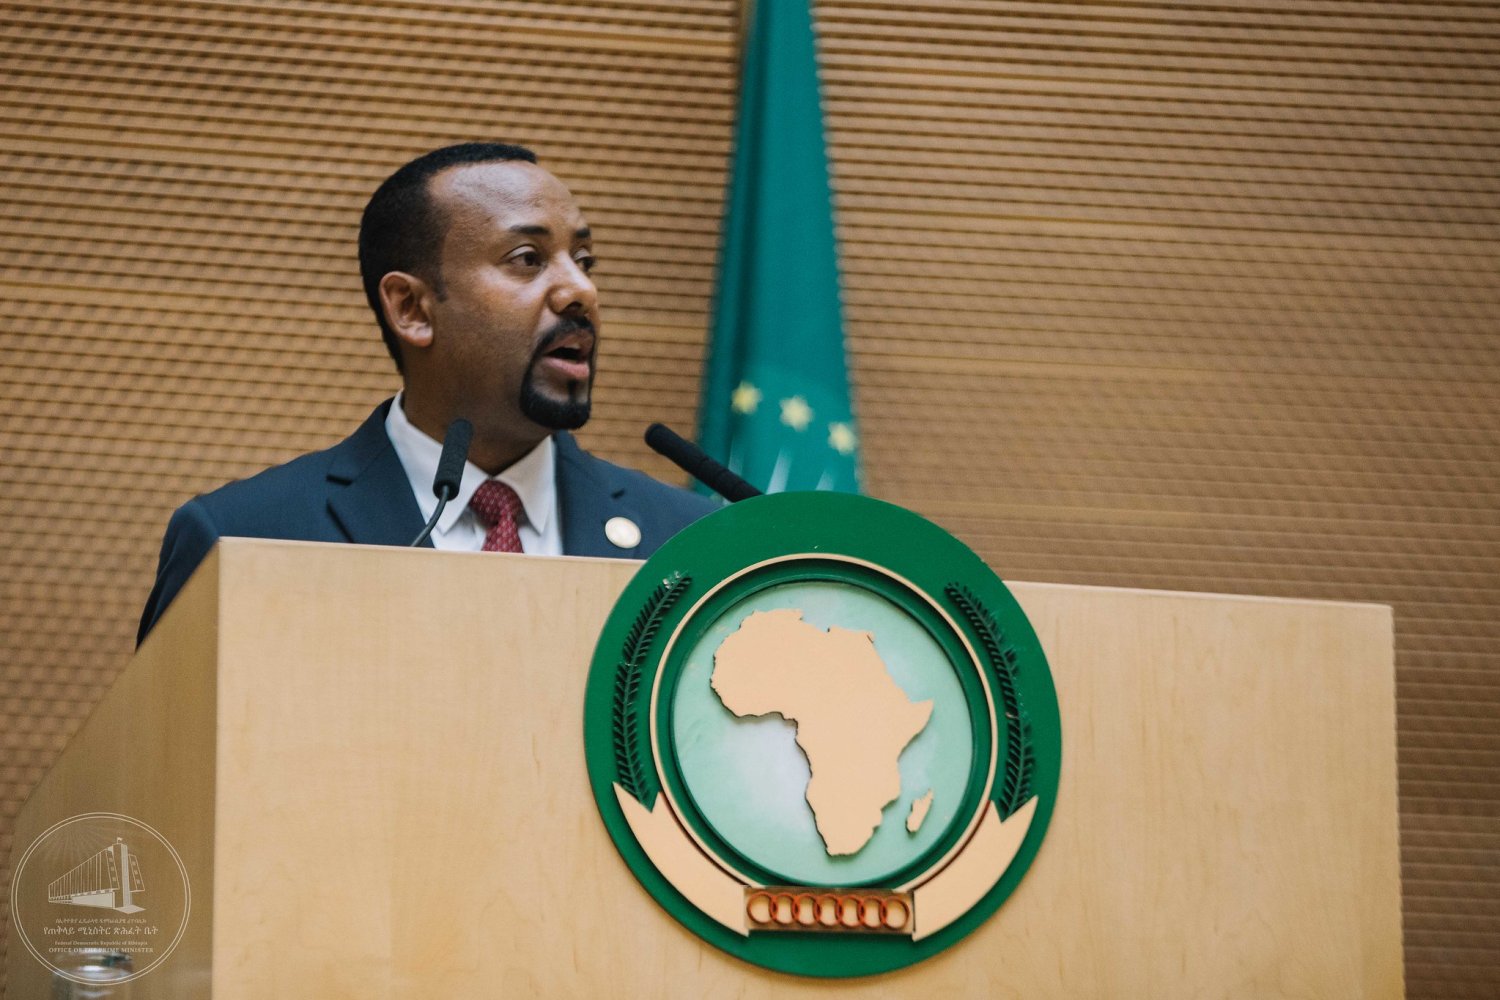 Accord Ethiopie-Somaliland. Des tensions réactionnaires gagnent la Corne de l'Afrique